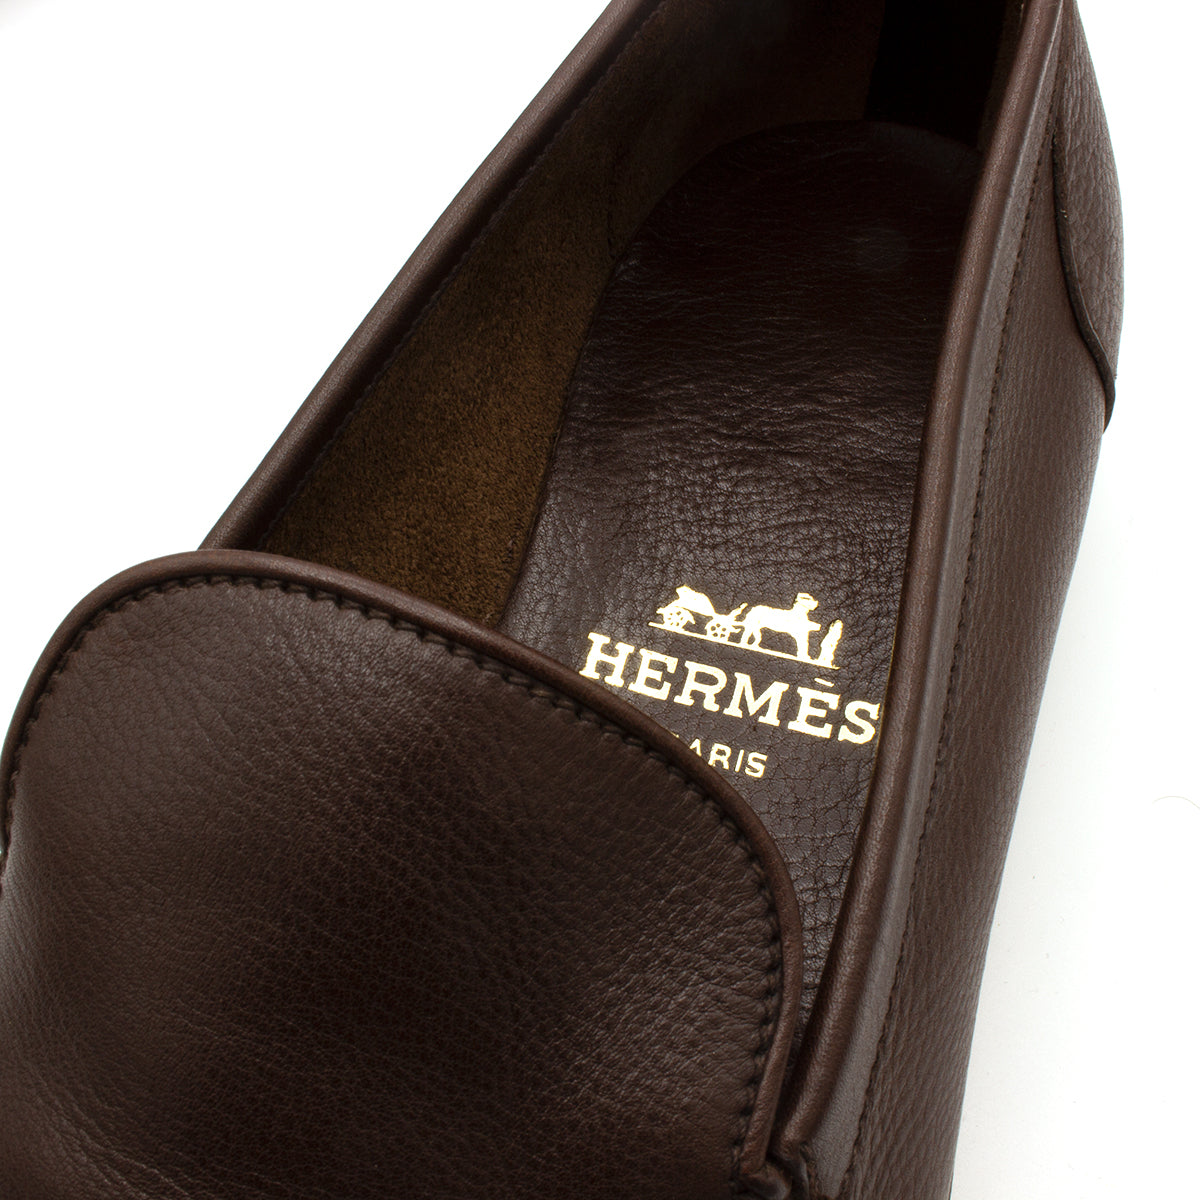 Hermes mocassins shoes